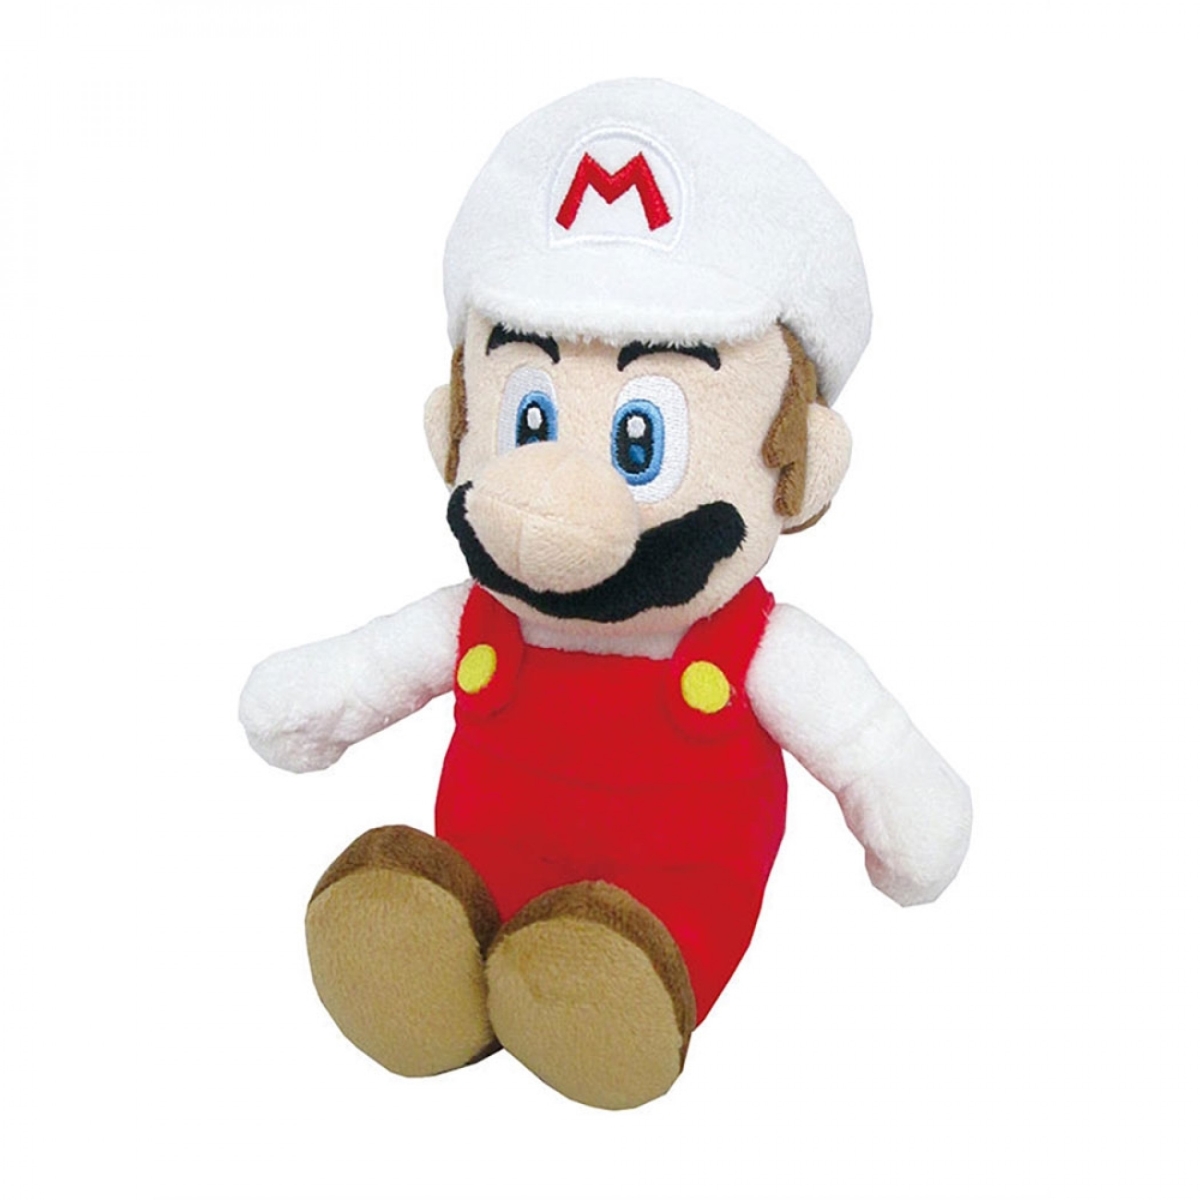 Picture of Super Mario Bros 810405 10 in. Nintendo Super Mario Bros Fire Mario Plush Toy